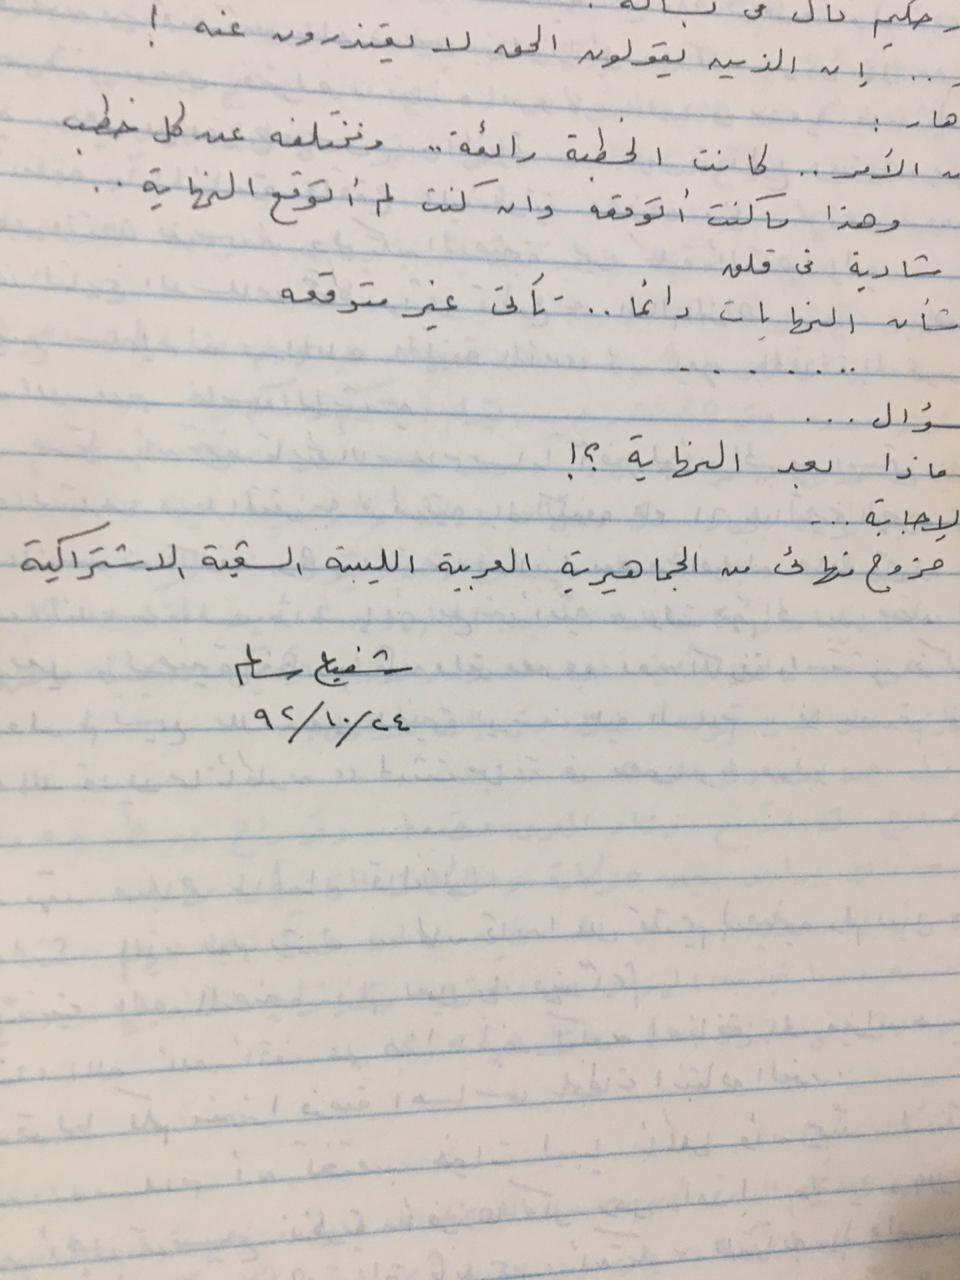 خطوط القسم الأول من الرواية المكتوب في ليبيا، ويظهر توقيع المؤلف في آخر صفحات هذا القسم